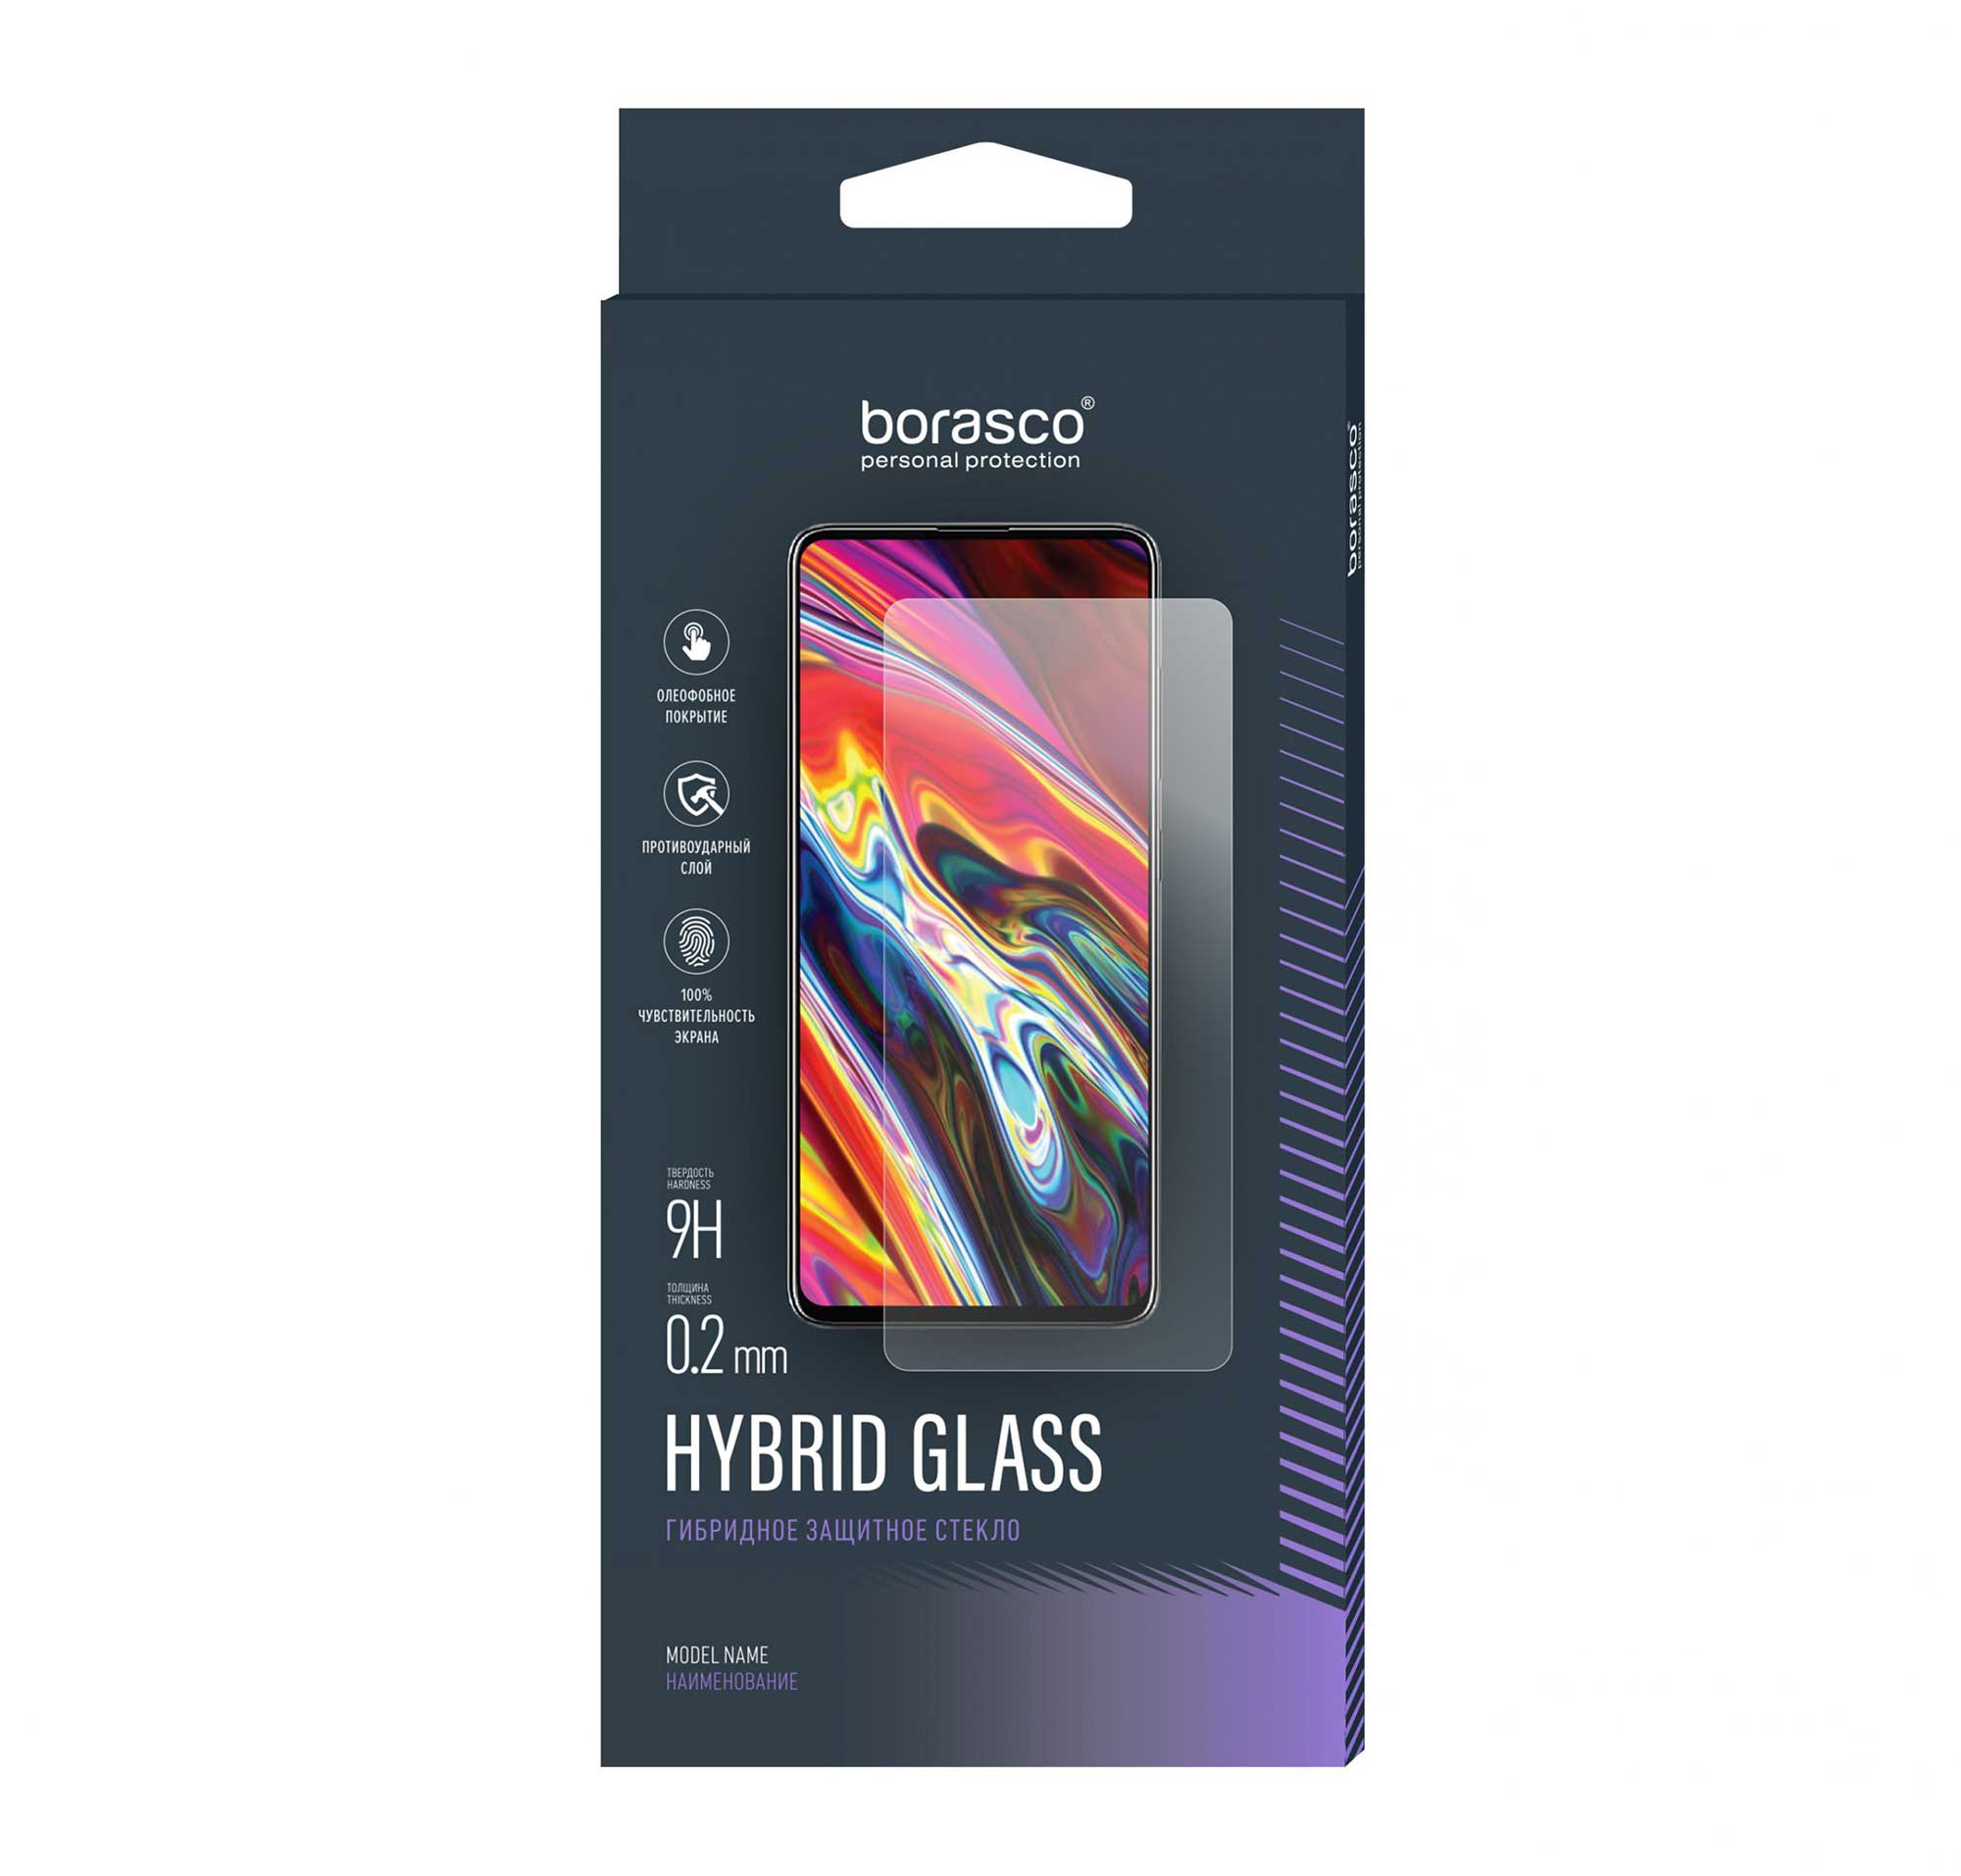 Защитное стекло BoraSCO Hybrid Glass для BQ 4030G NICE MINI защитное стекло bq для bq 4030g nice mini